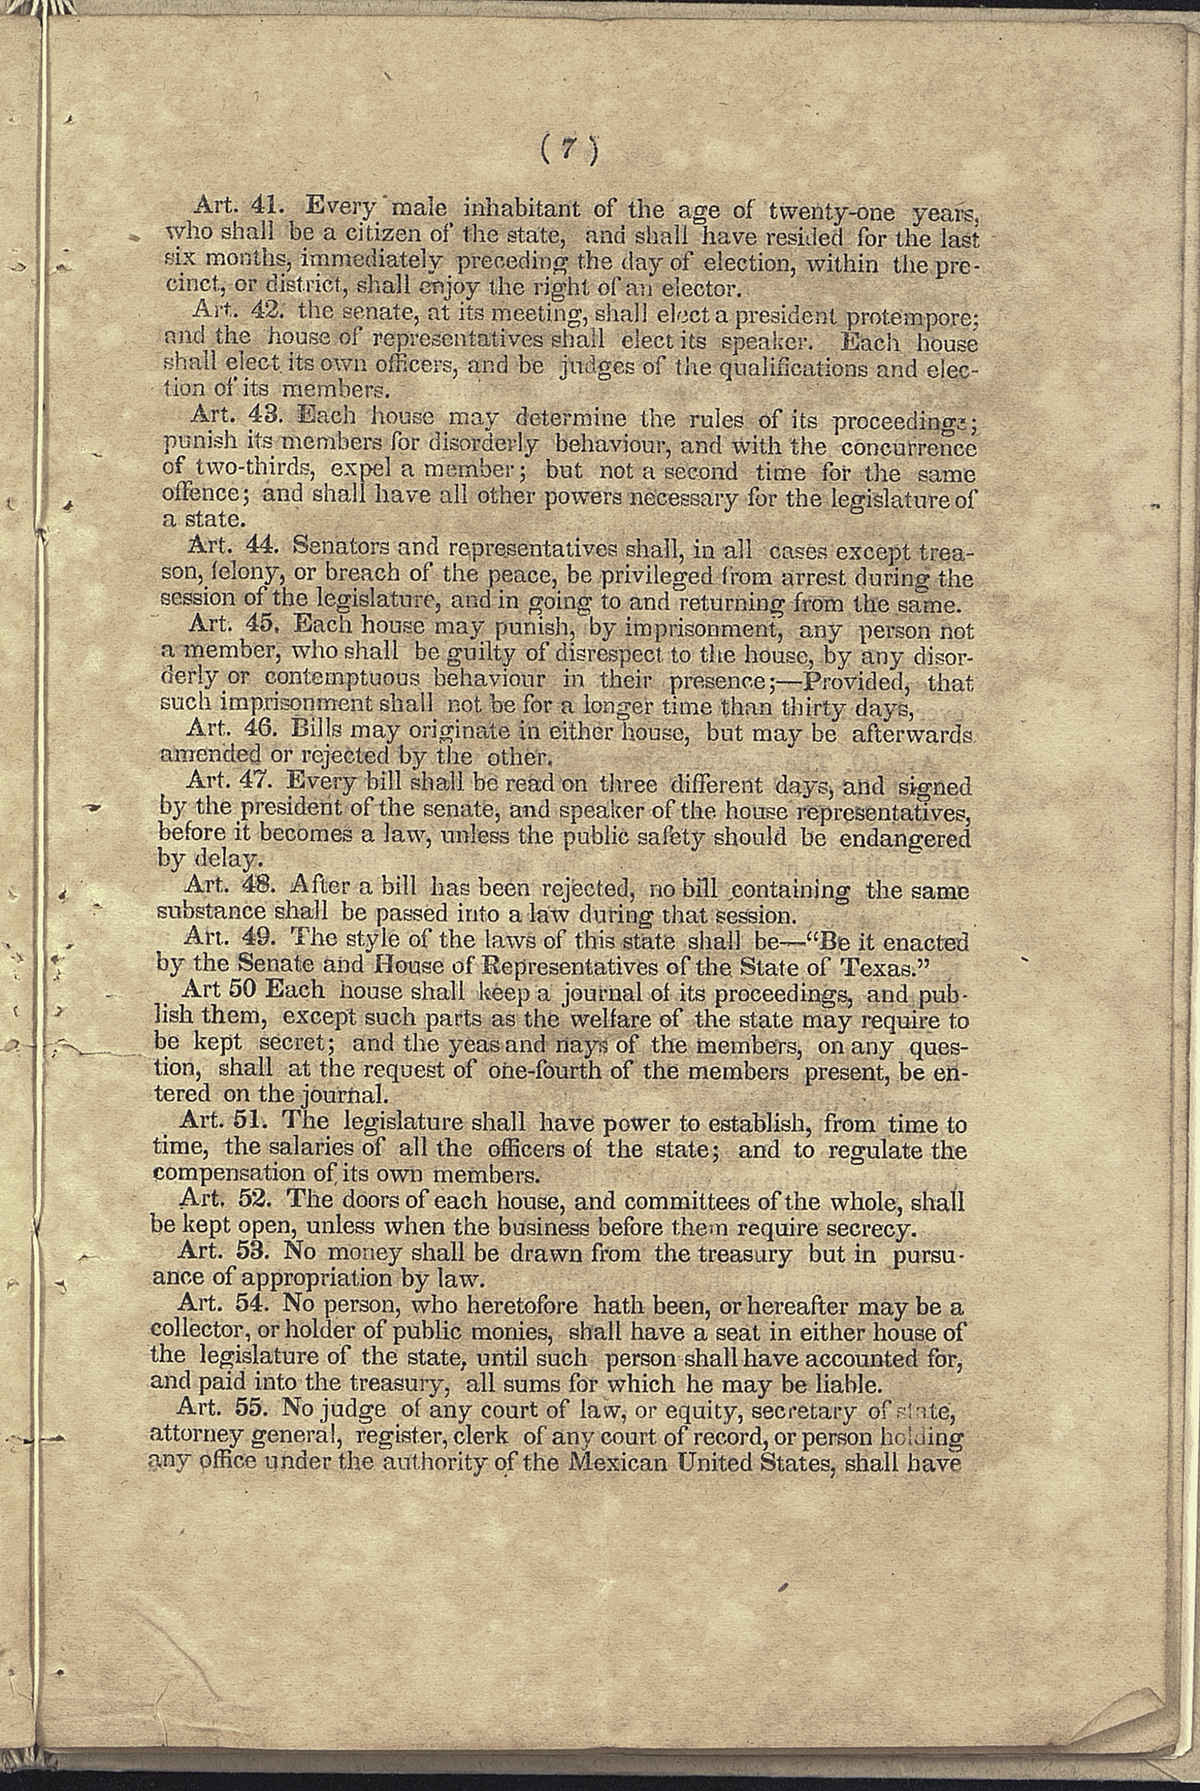 Legislature, Articles 41-55